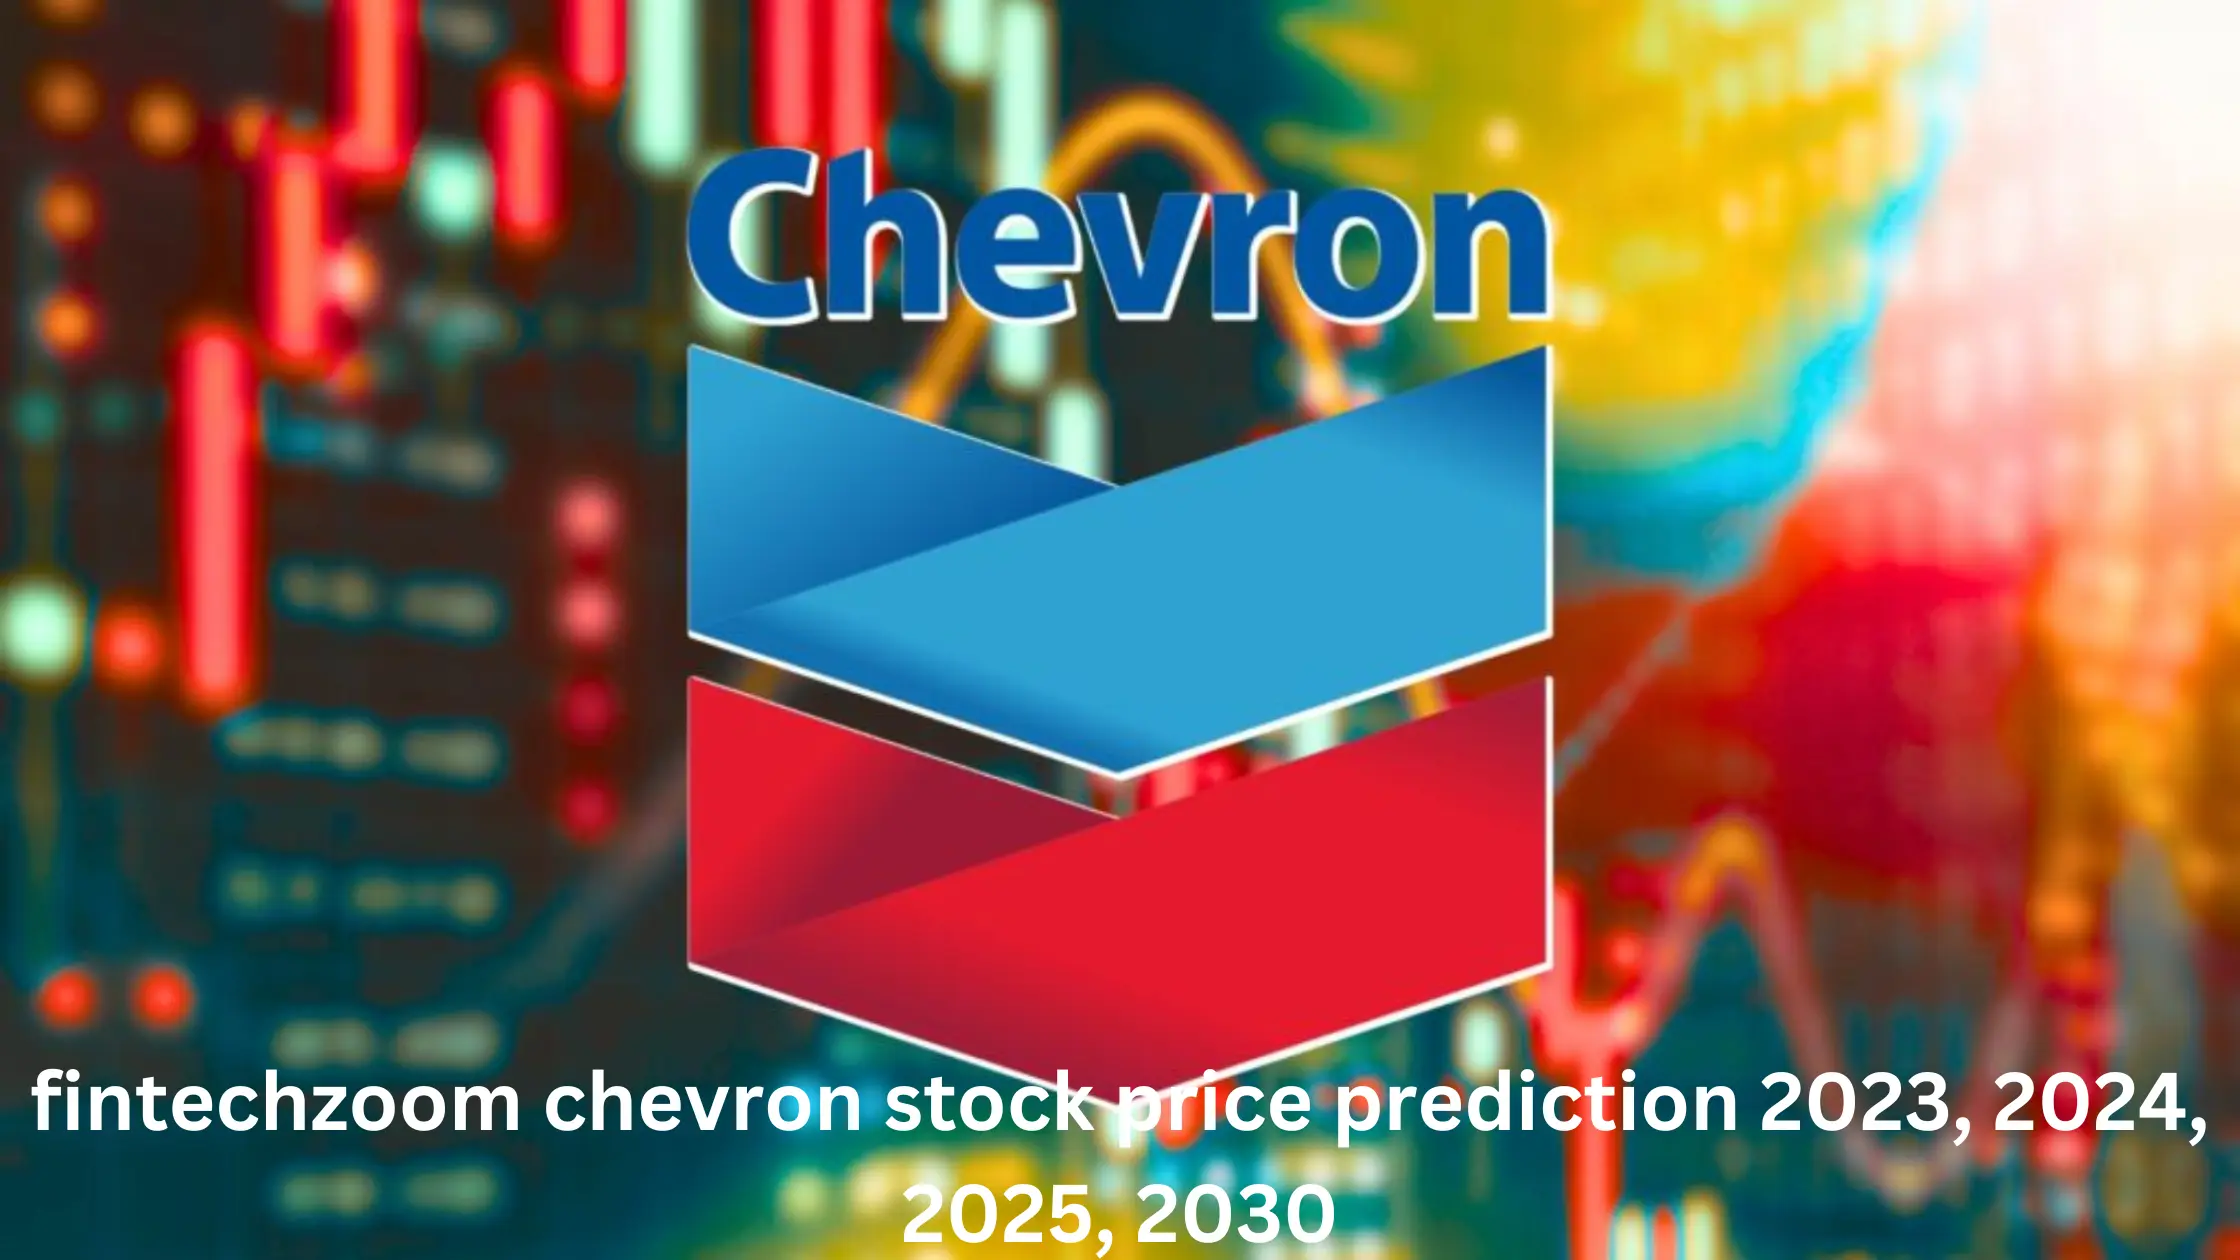 fintechzoom chevron stock price prediction 2023, 2024, 2025, 2030